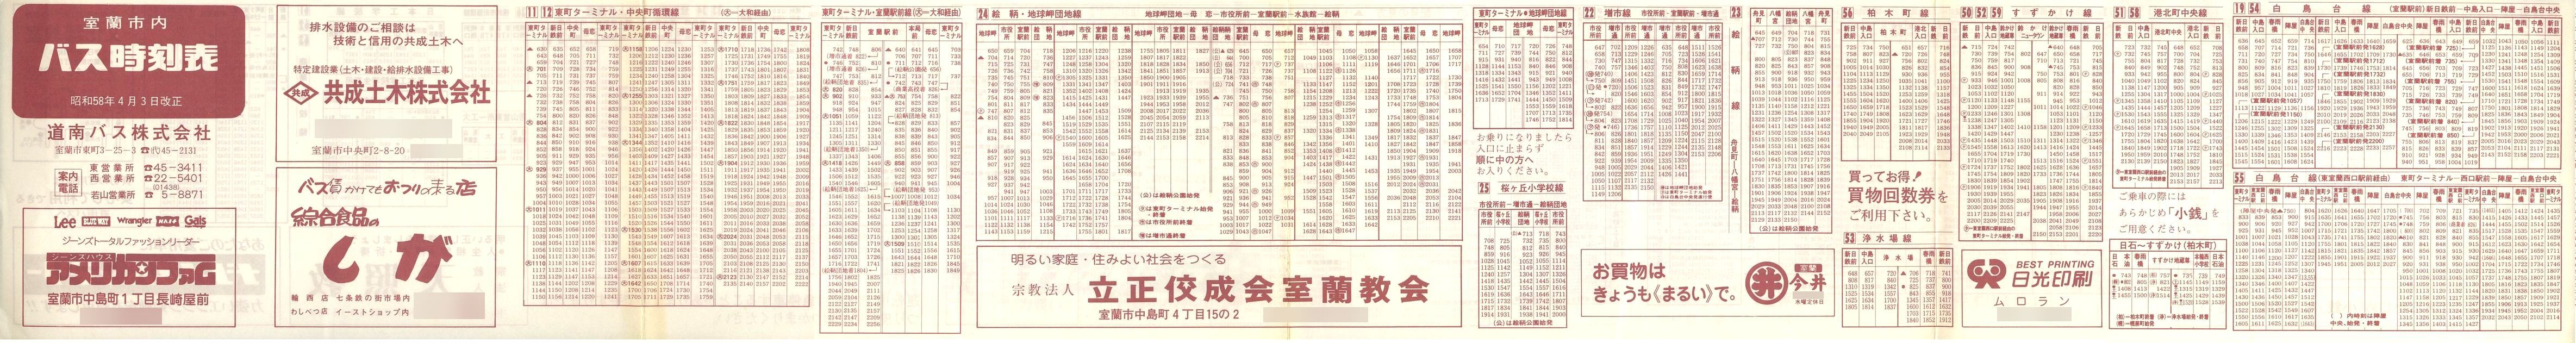 1983-04-03改正_道南バス_室蘭市内線時刻表表面